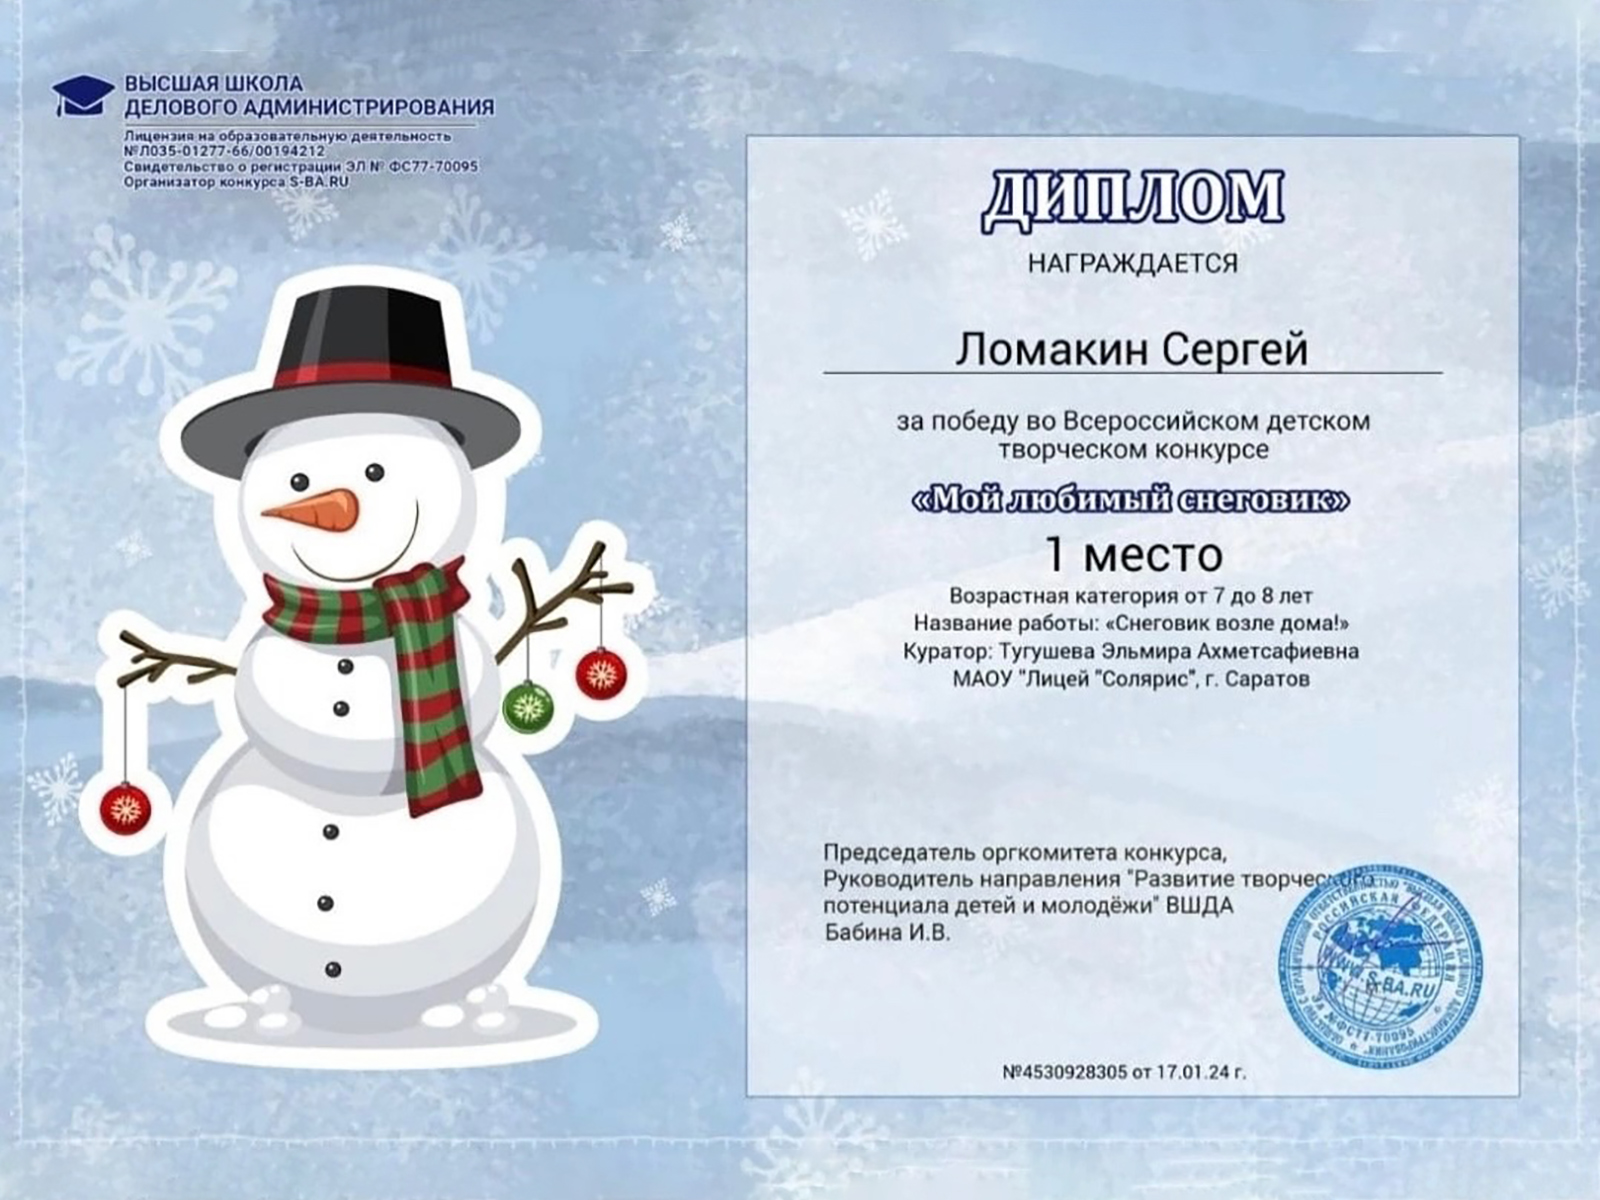 Всероссийский конкурс «Мой любимый снеговик».